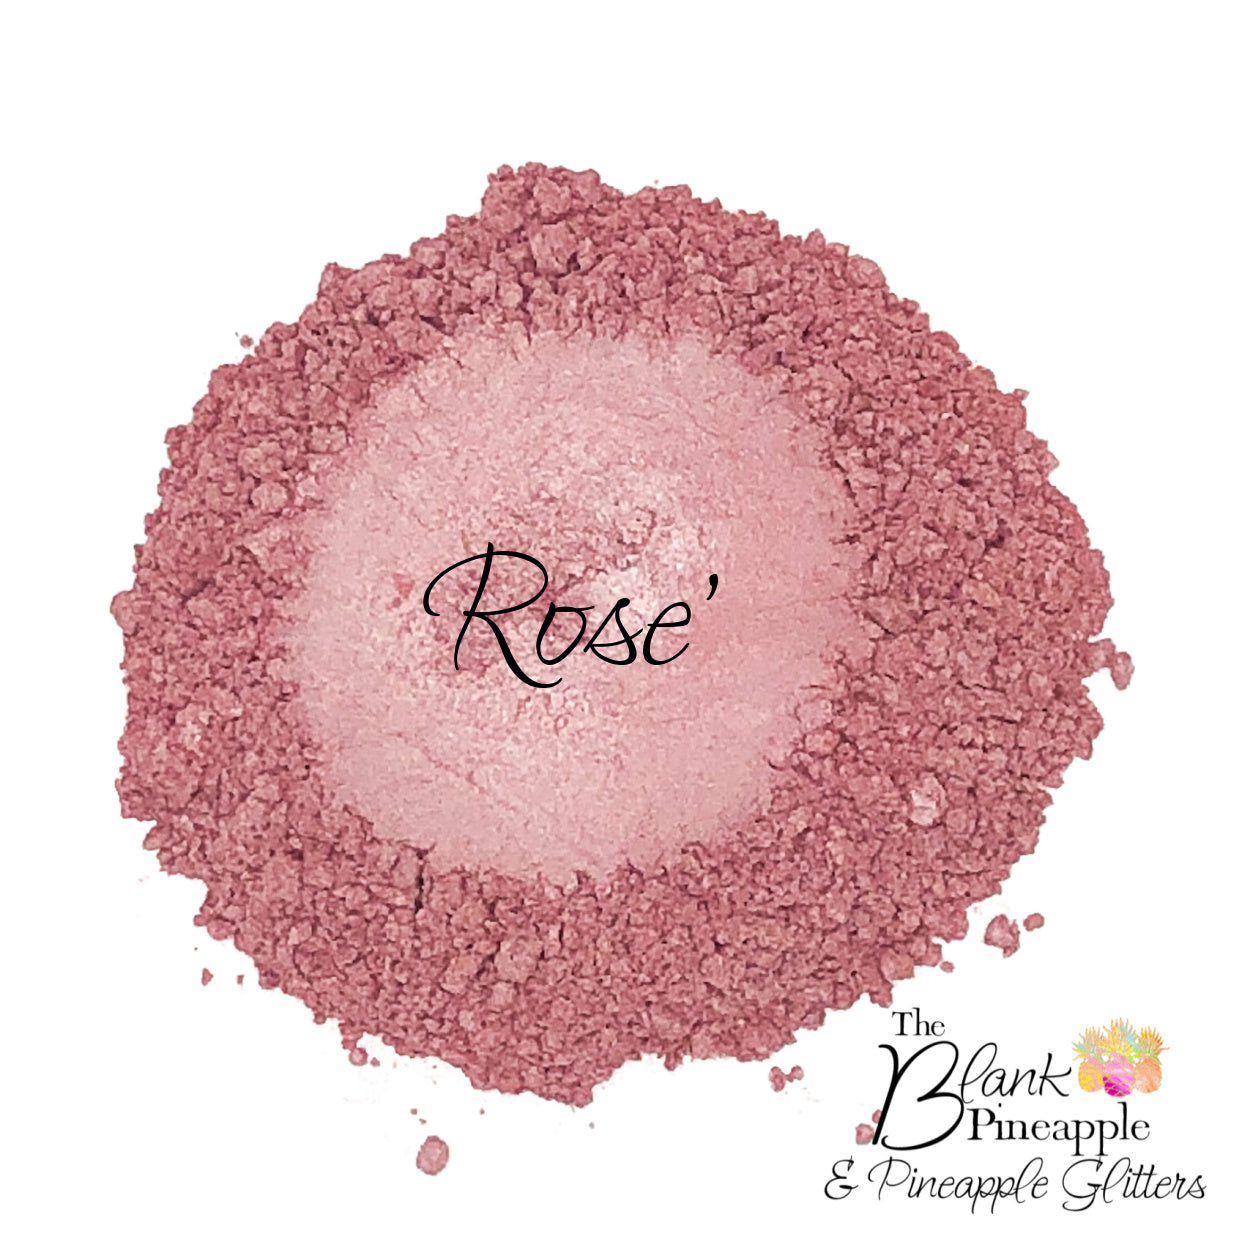 Rose' - Mica Powder Pigment 10 grams, Pearlescent Pink Mica Powder